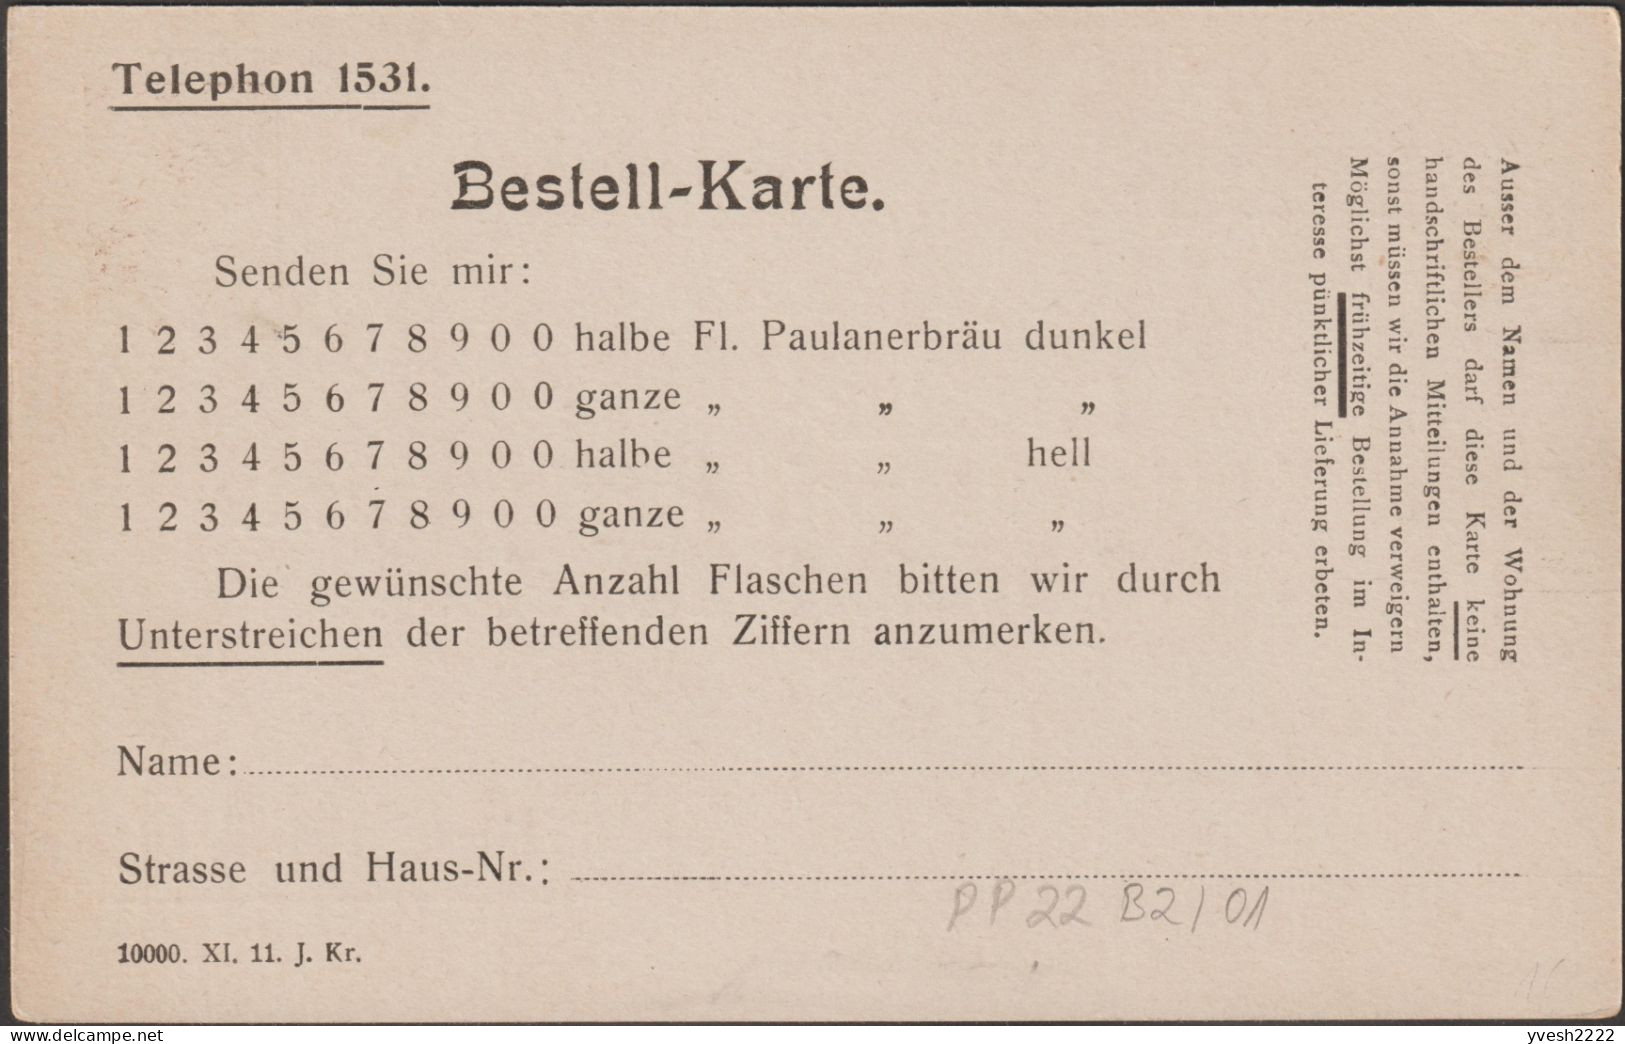 Bavière 1911. 2 Entiers Postaux Timbrés Sur Commande, Bons De Commande De La Bière Paulanerbräu. Salvatorbrauerei - Bier